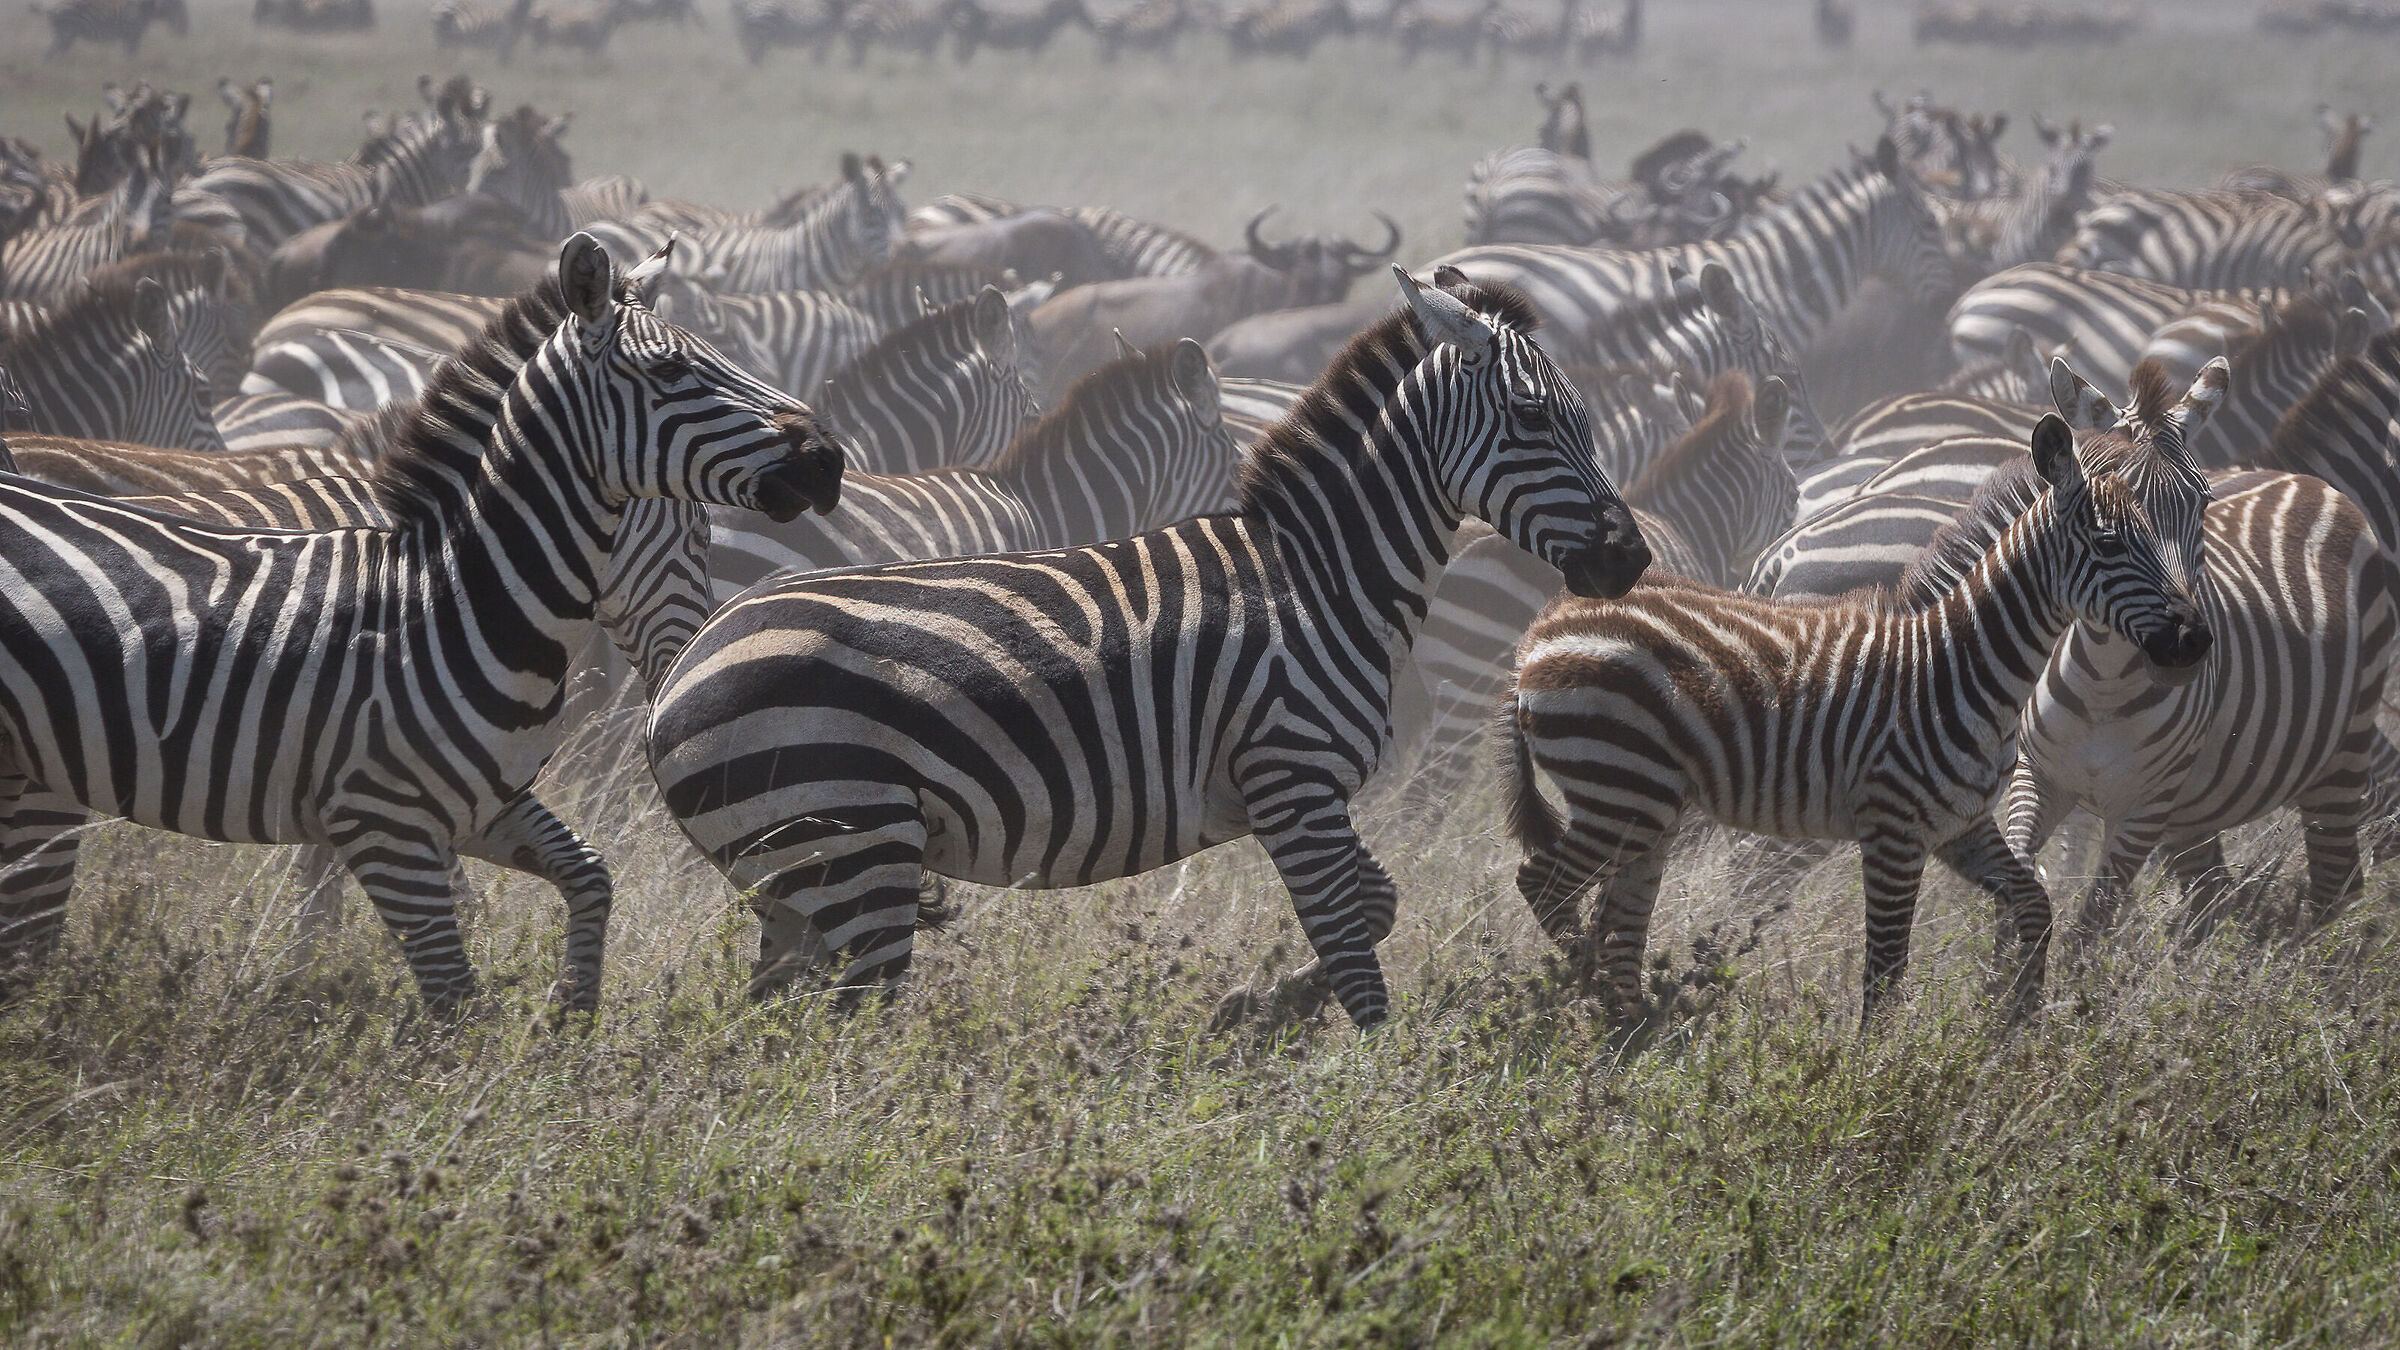 La grande migrazione invernale - Tanzania Serengeti NP...